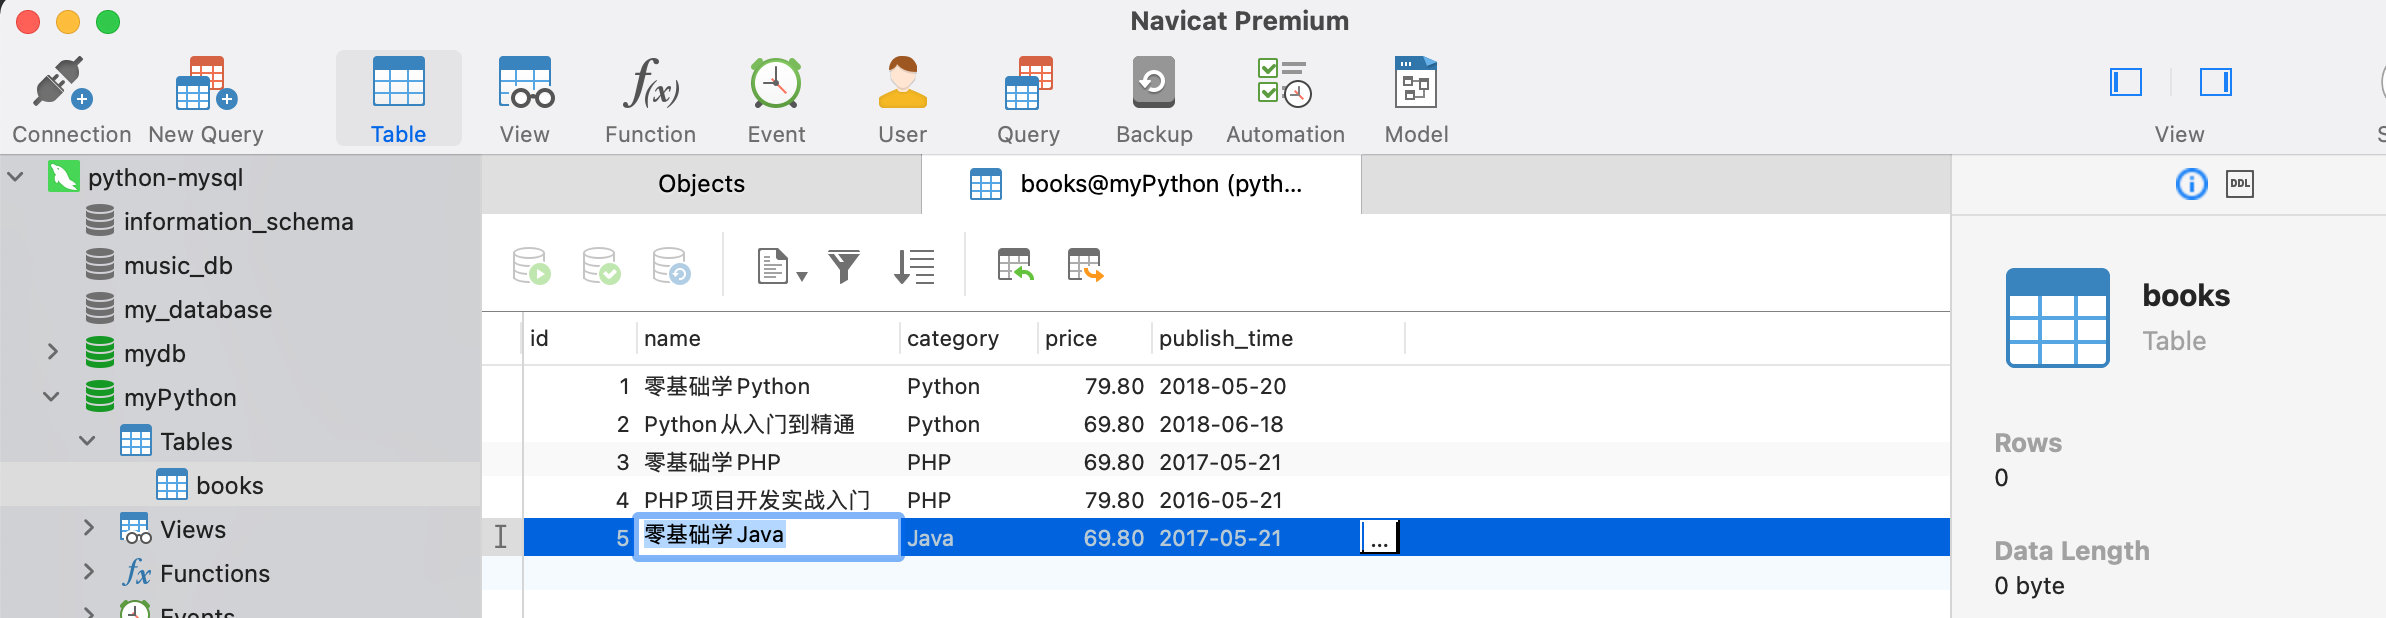 Python爬虫-数据处理与存储